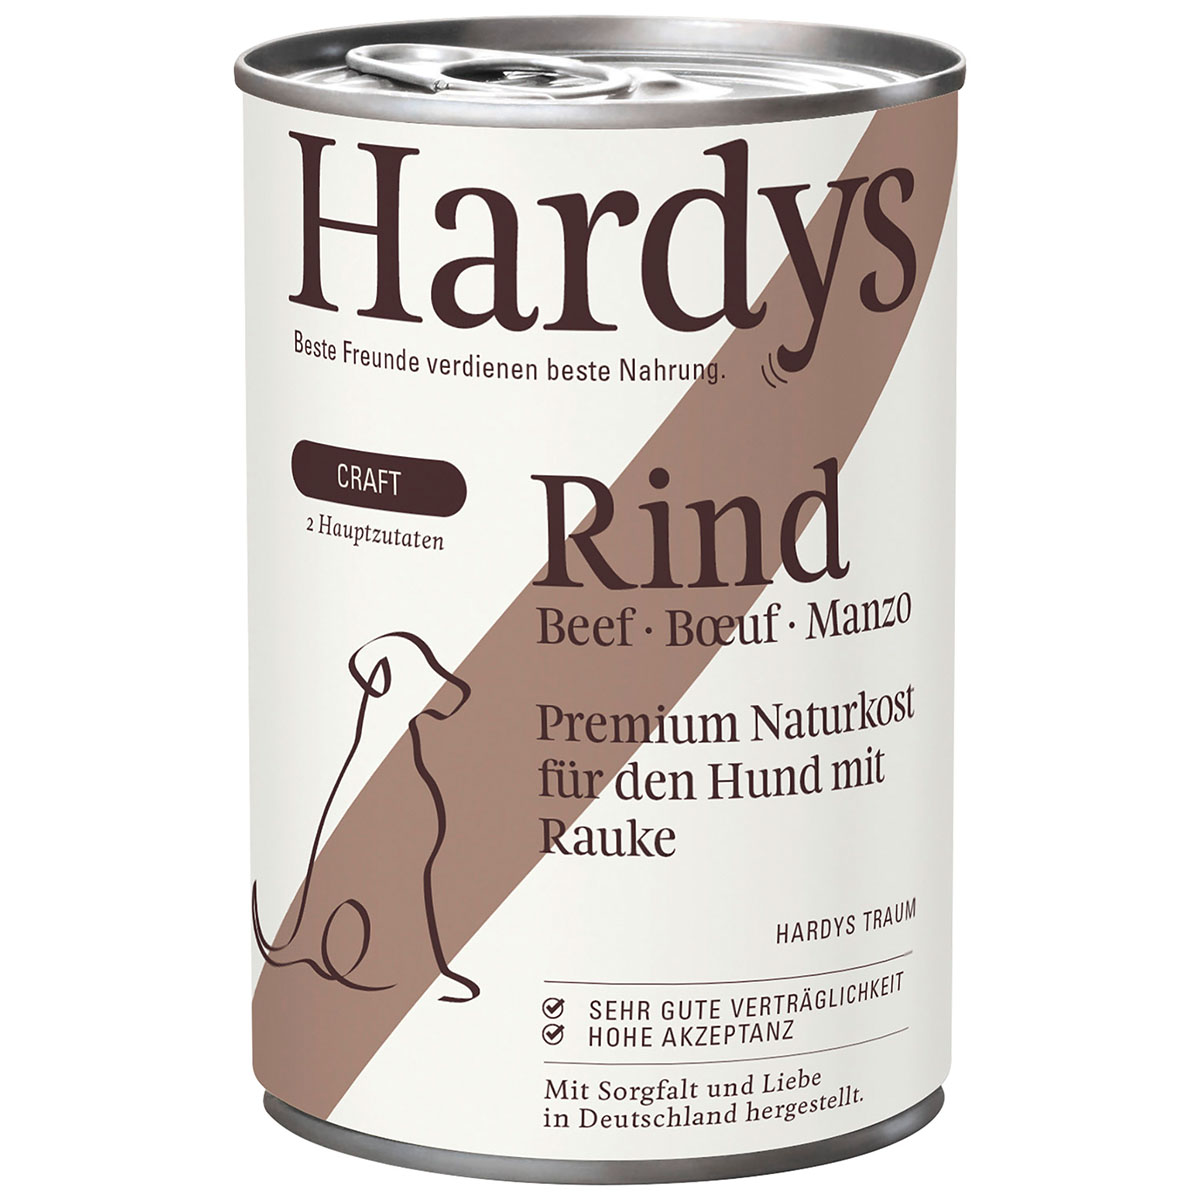 Hardys CRAFT Rind & Rauke 6x400g von Hardys